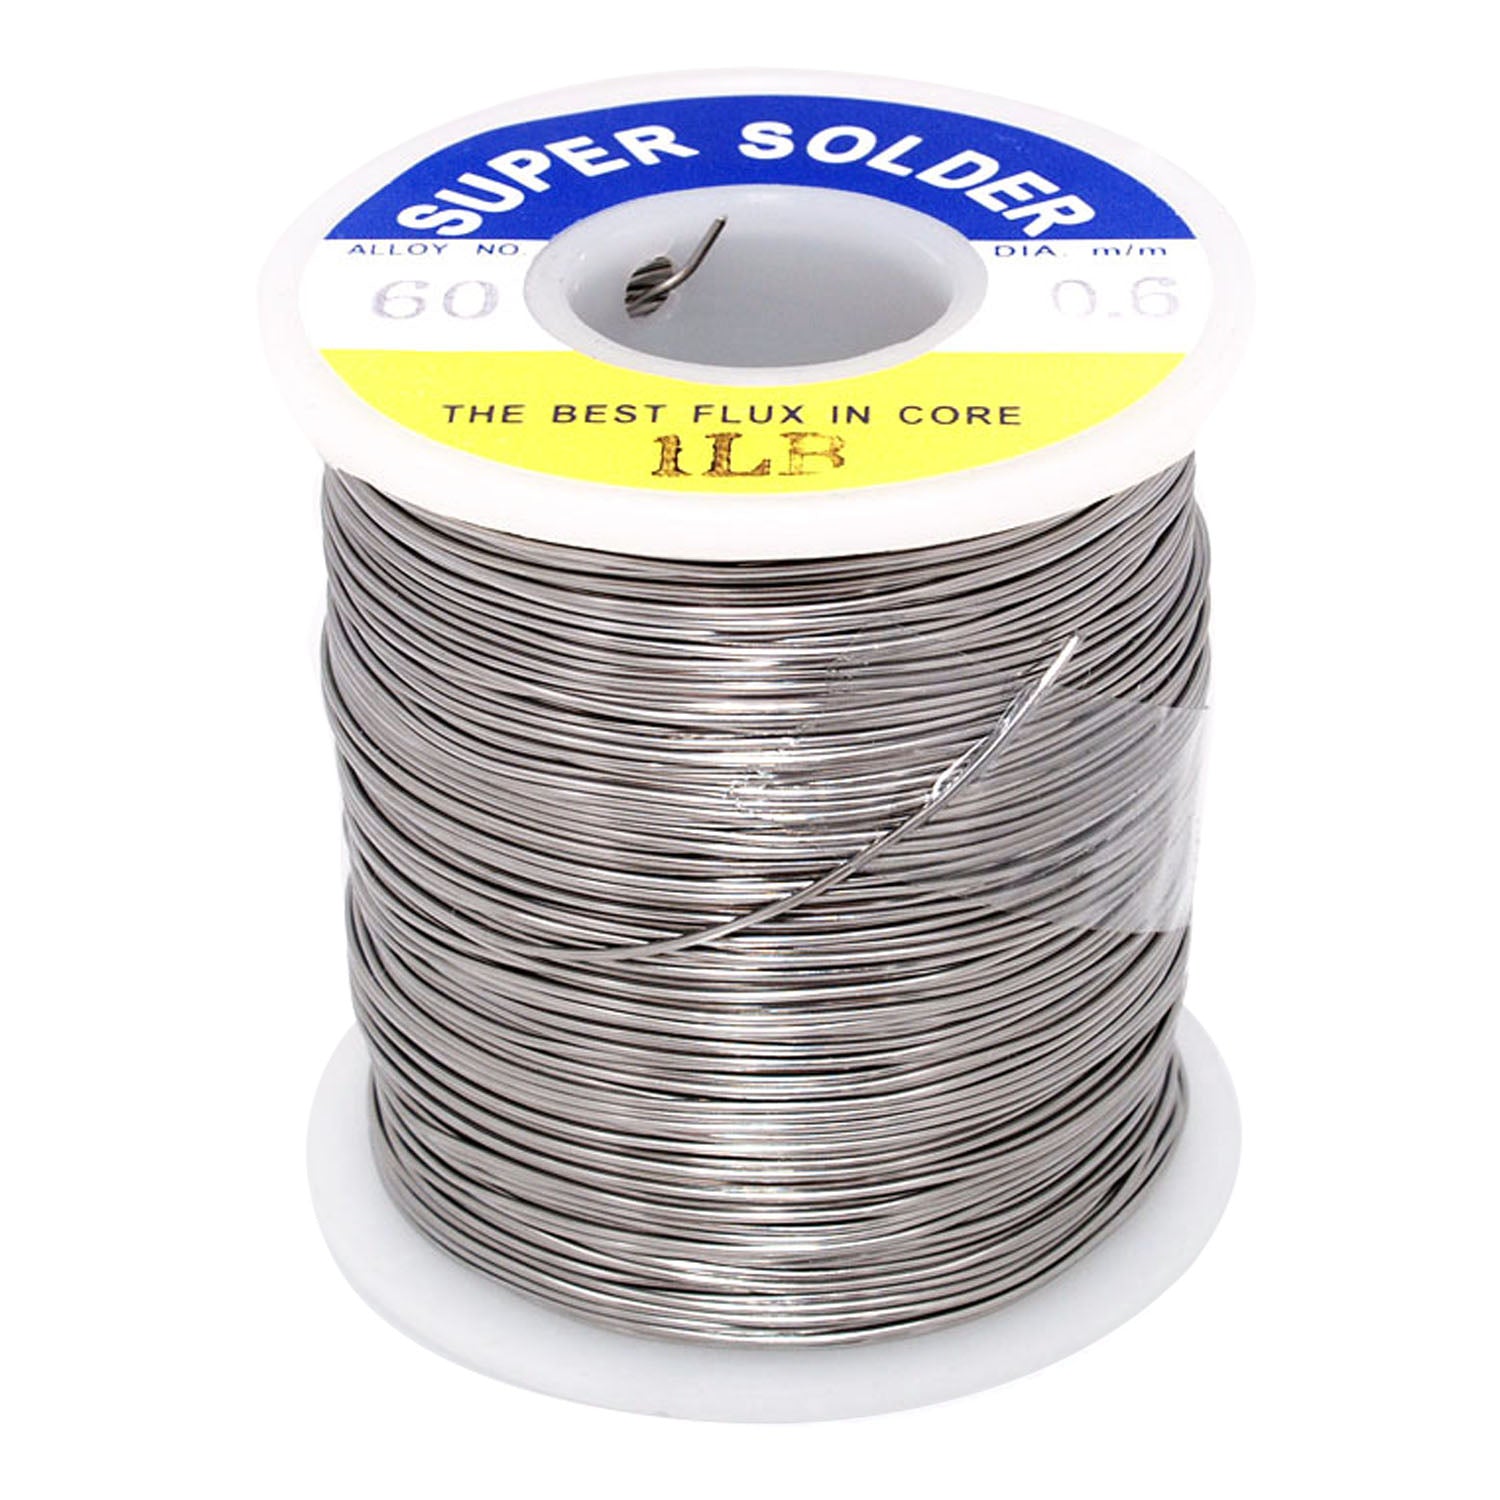 125-640610B 0.6m 1.0lb 60/40 JCM Solder wire